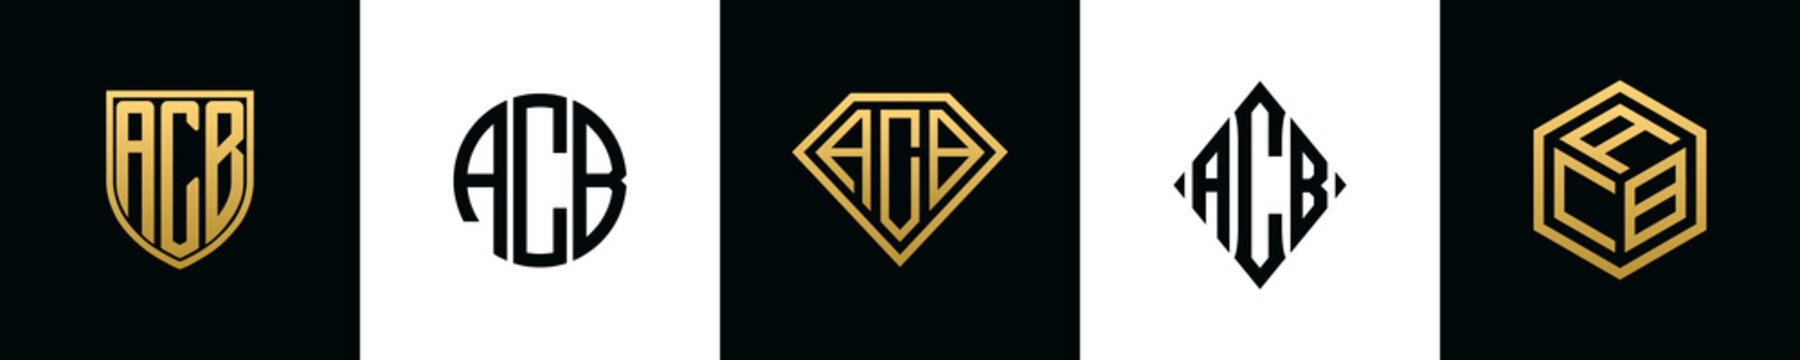 Initial letters ACB logo designs Bundle